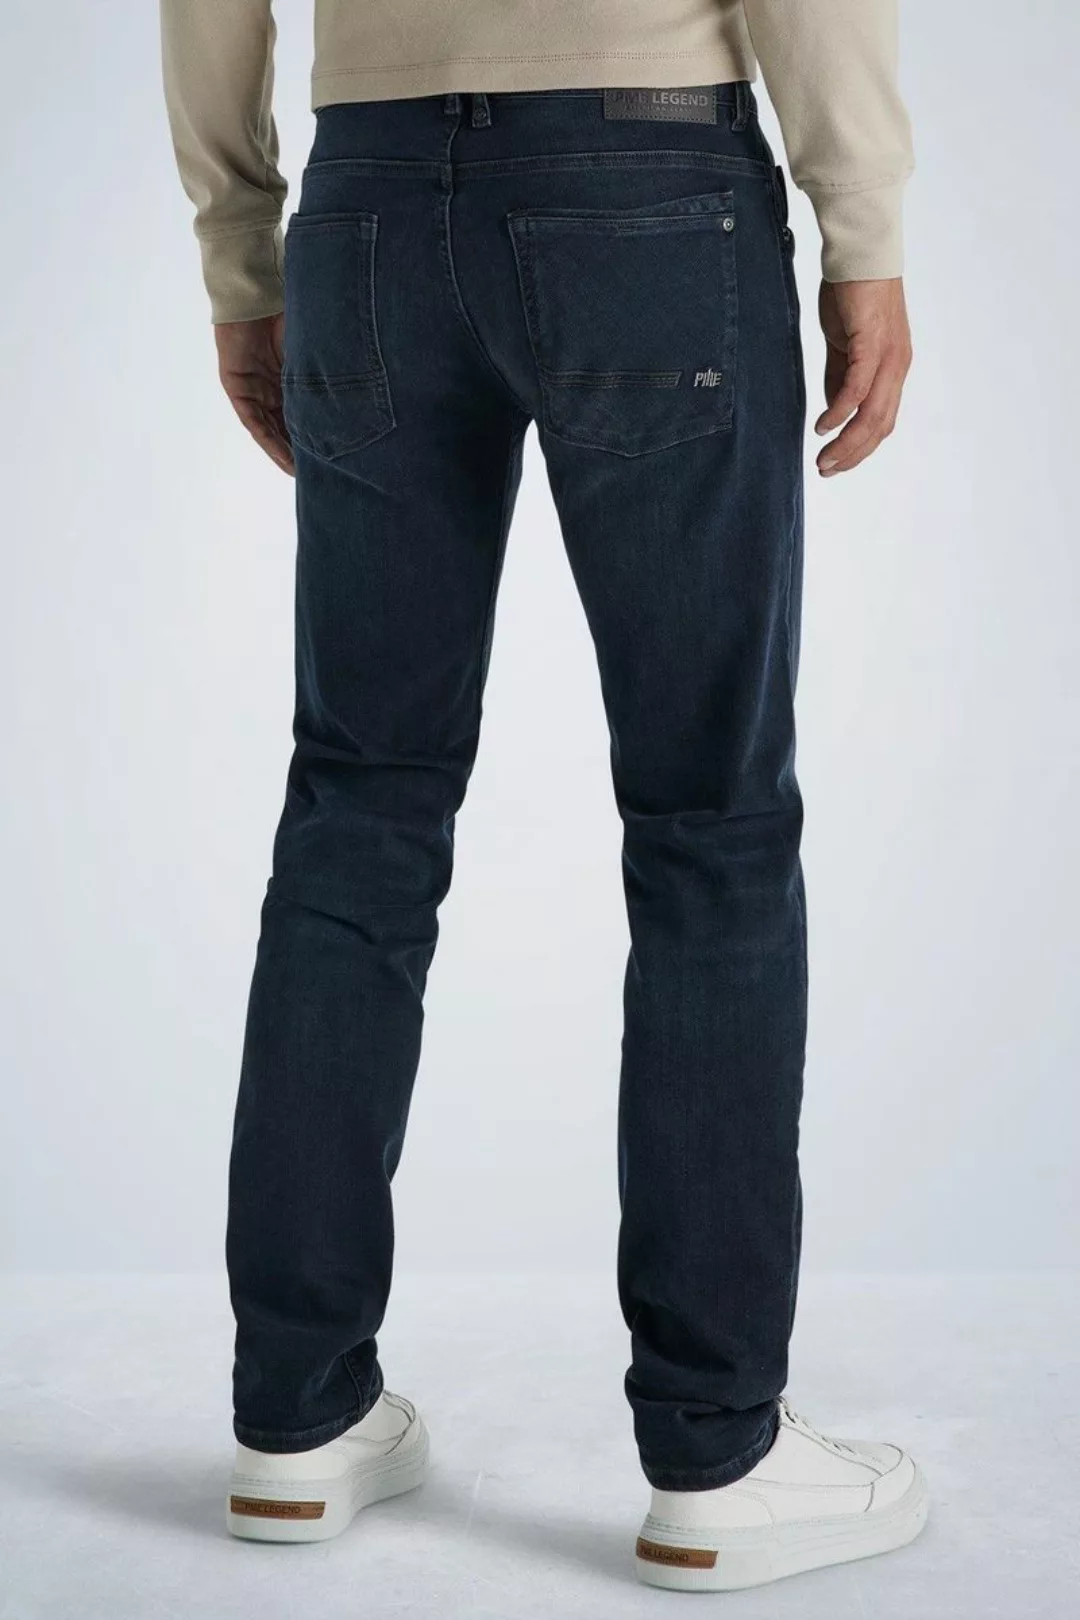 PME Legend Commander 3.0 Jeans Blau Schwarz - Größe W 33 - L 36 günstig online kaufen